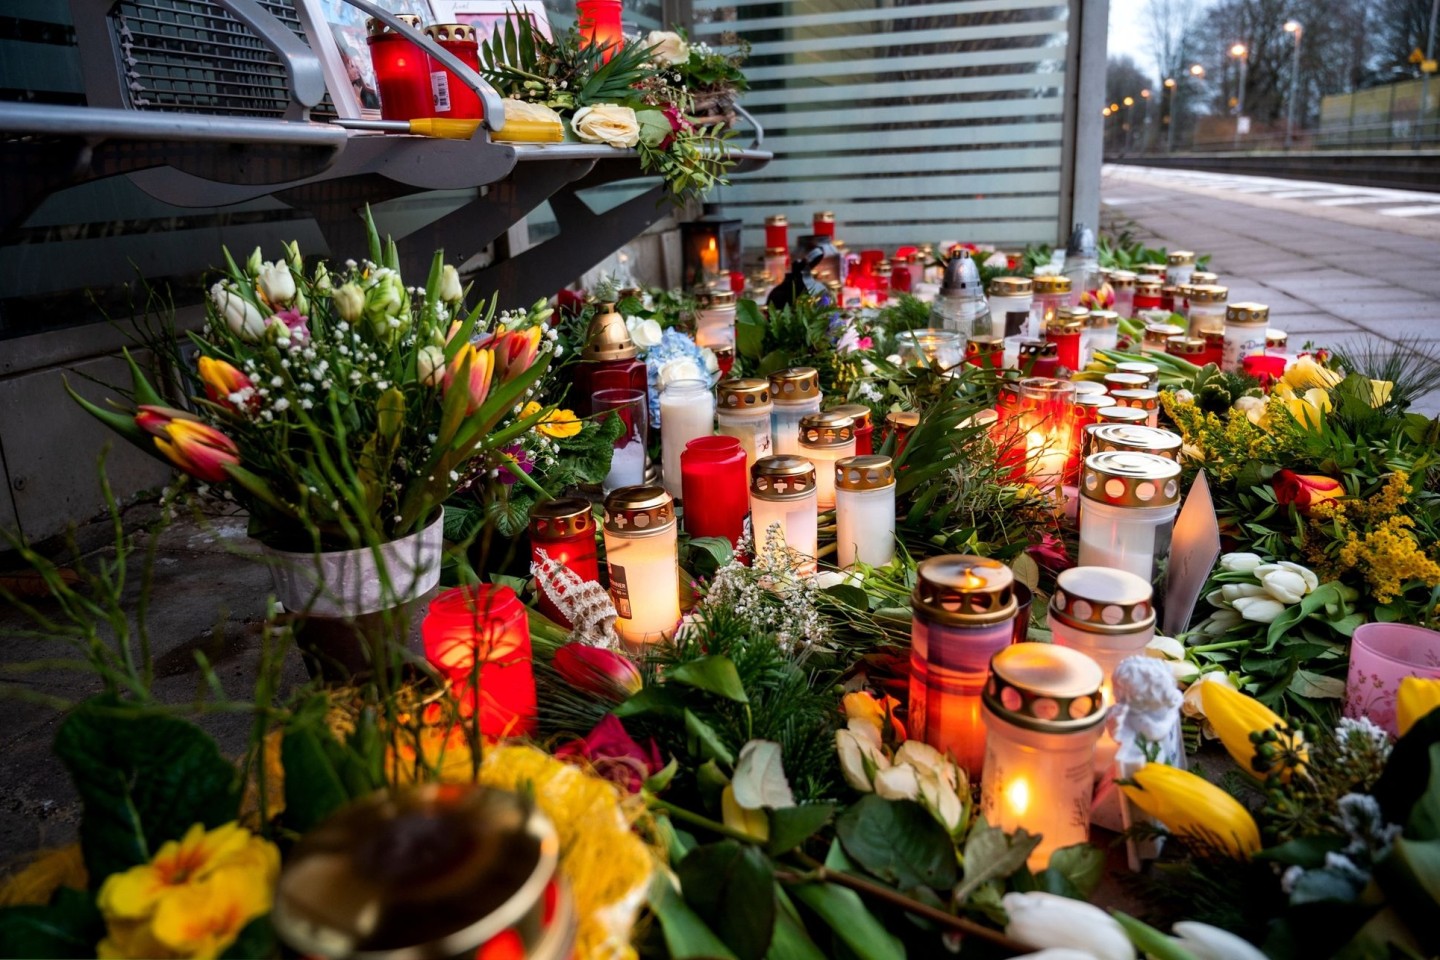 Bei einer Messerattacke in einem Regionalzug von Kiel nach Hamburg wurden am 25.01.2023 in Brokstedt zwei junge Menschen getötet und fünf verletzt.